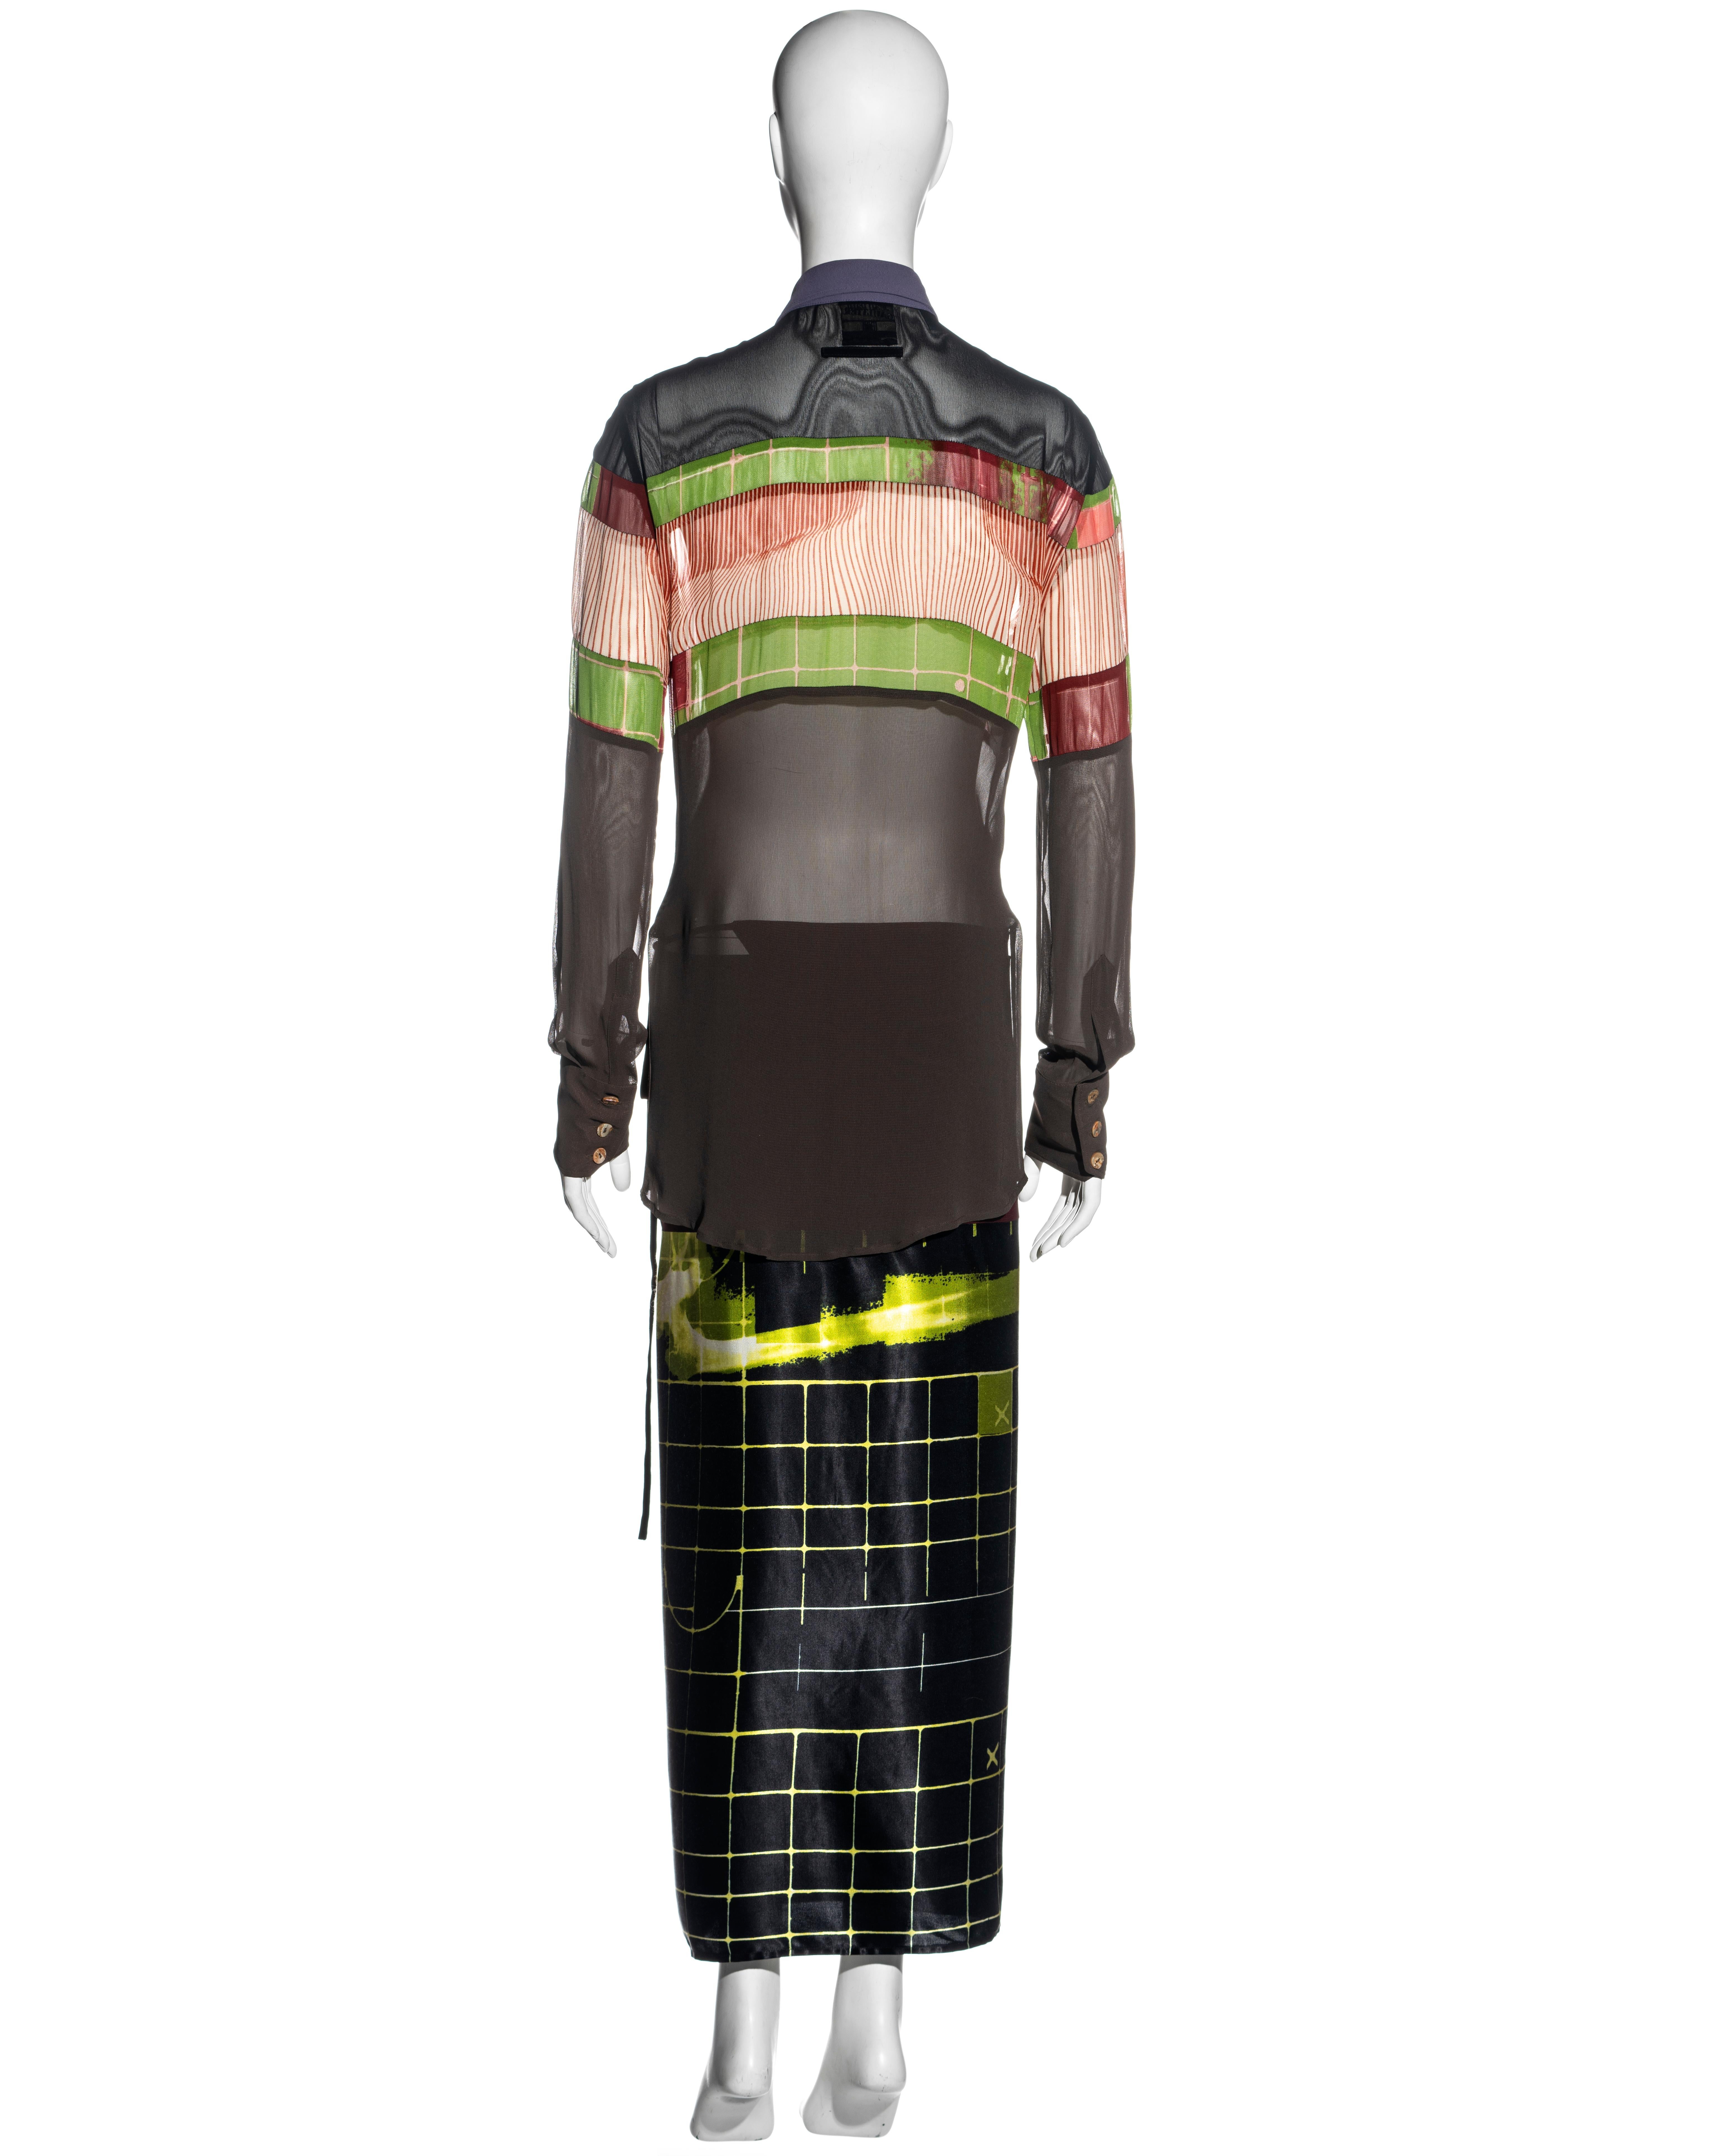 Jean Paul Gaulter 'Cyberhippie' shirt dress with wrap skirt, ss 1996 3